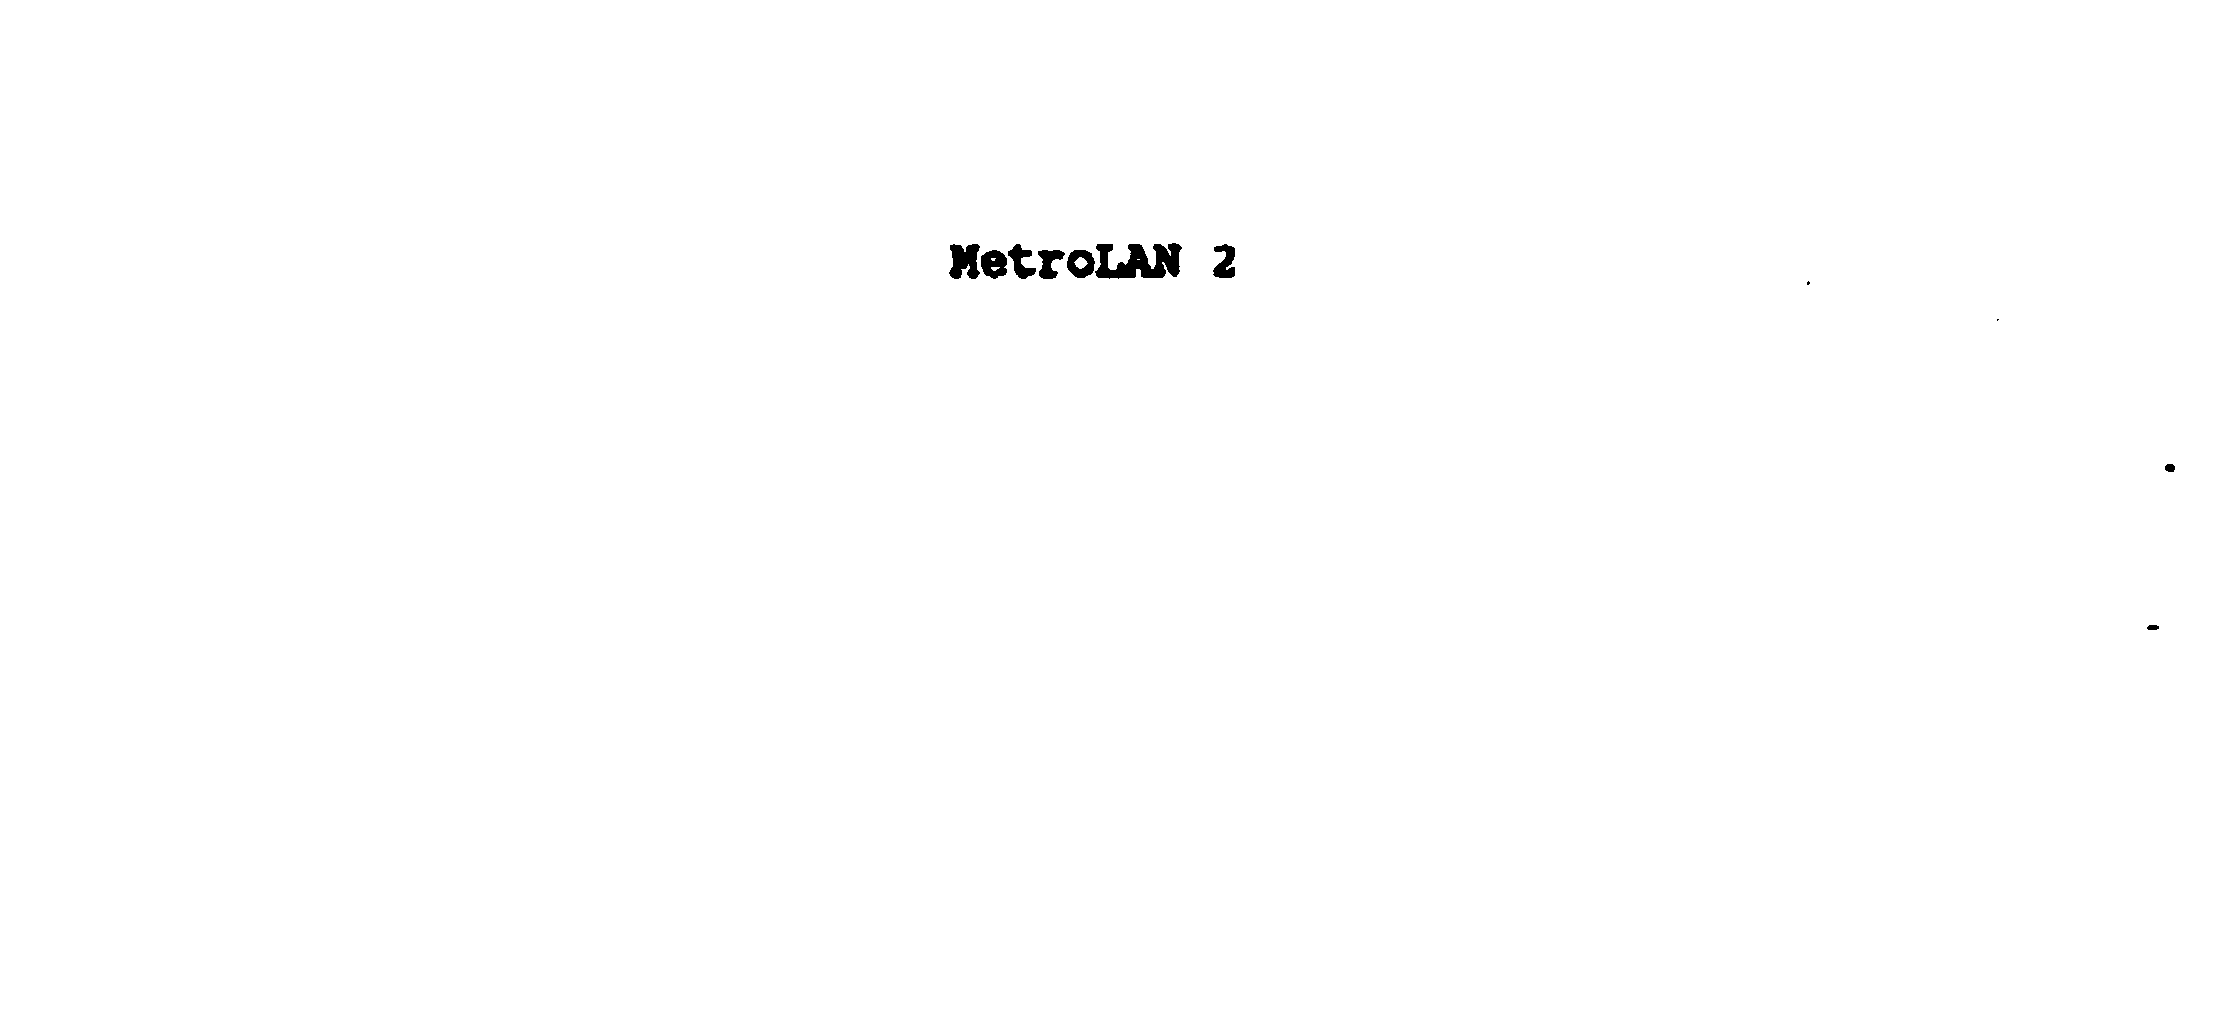  METROLAN 2